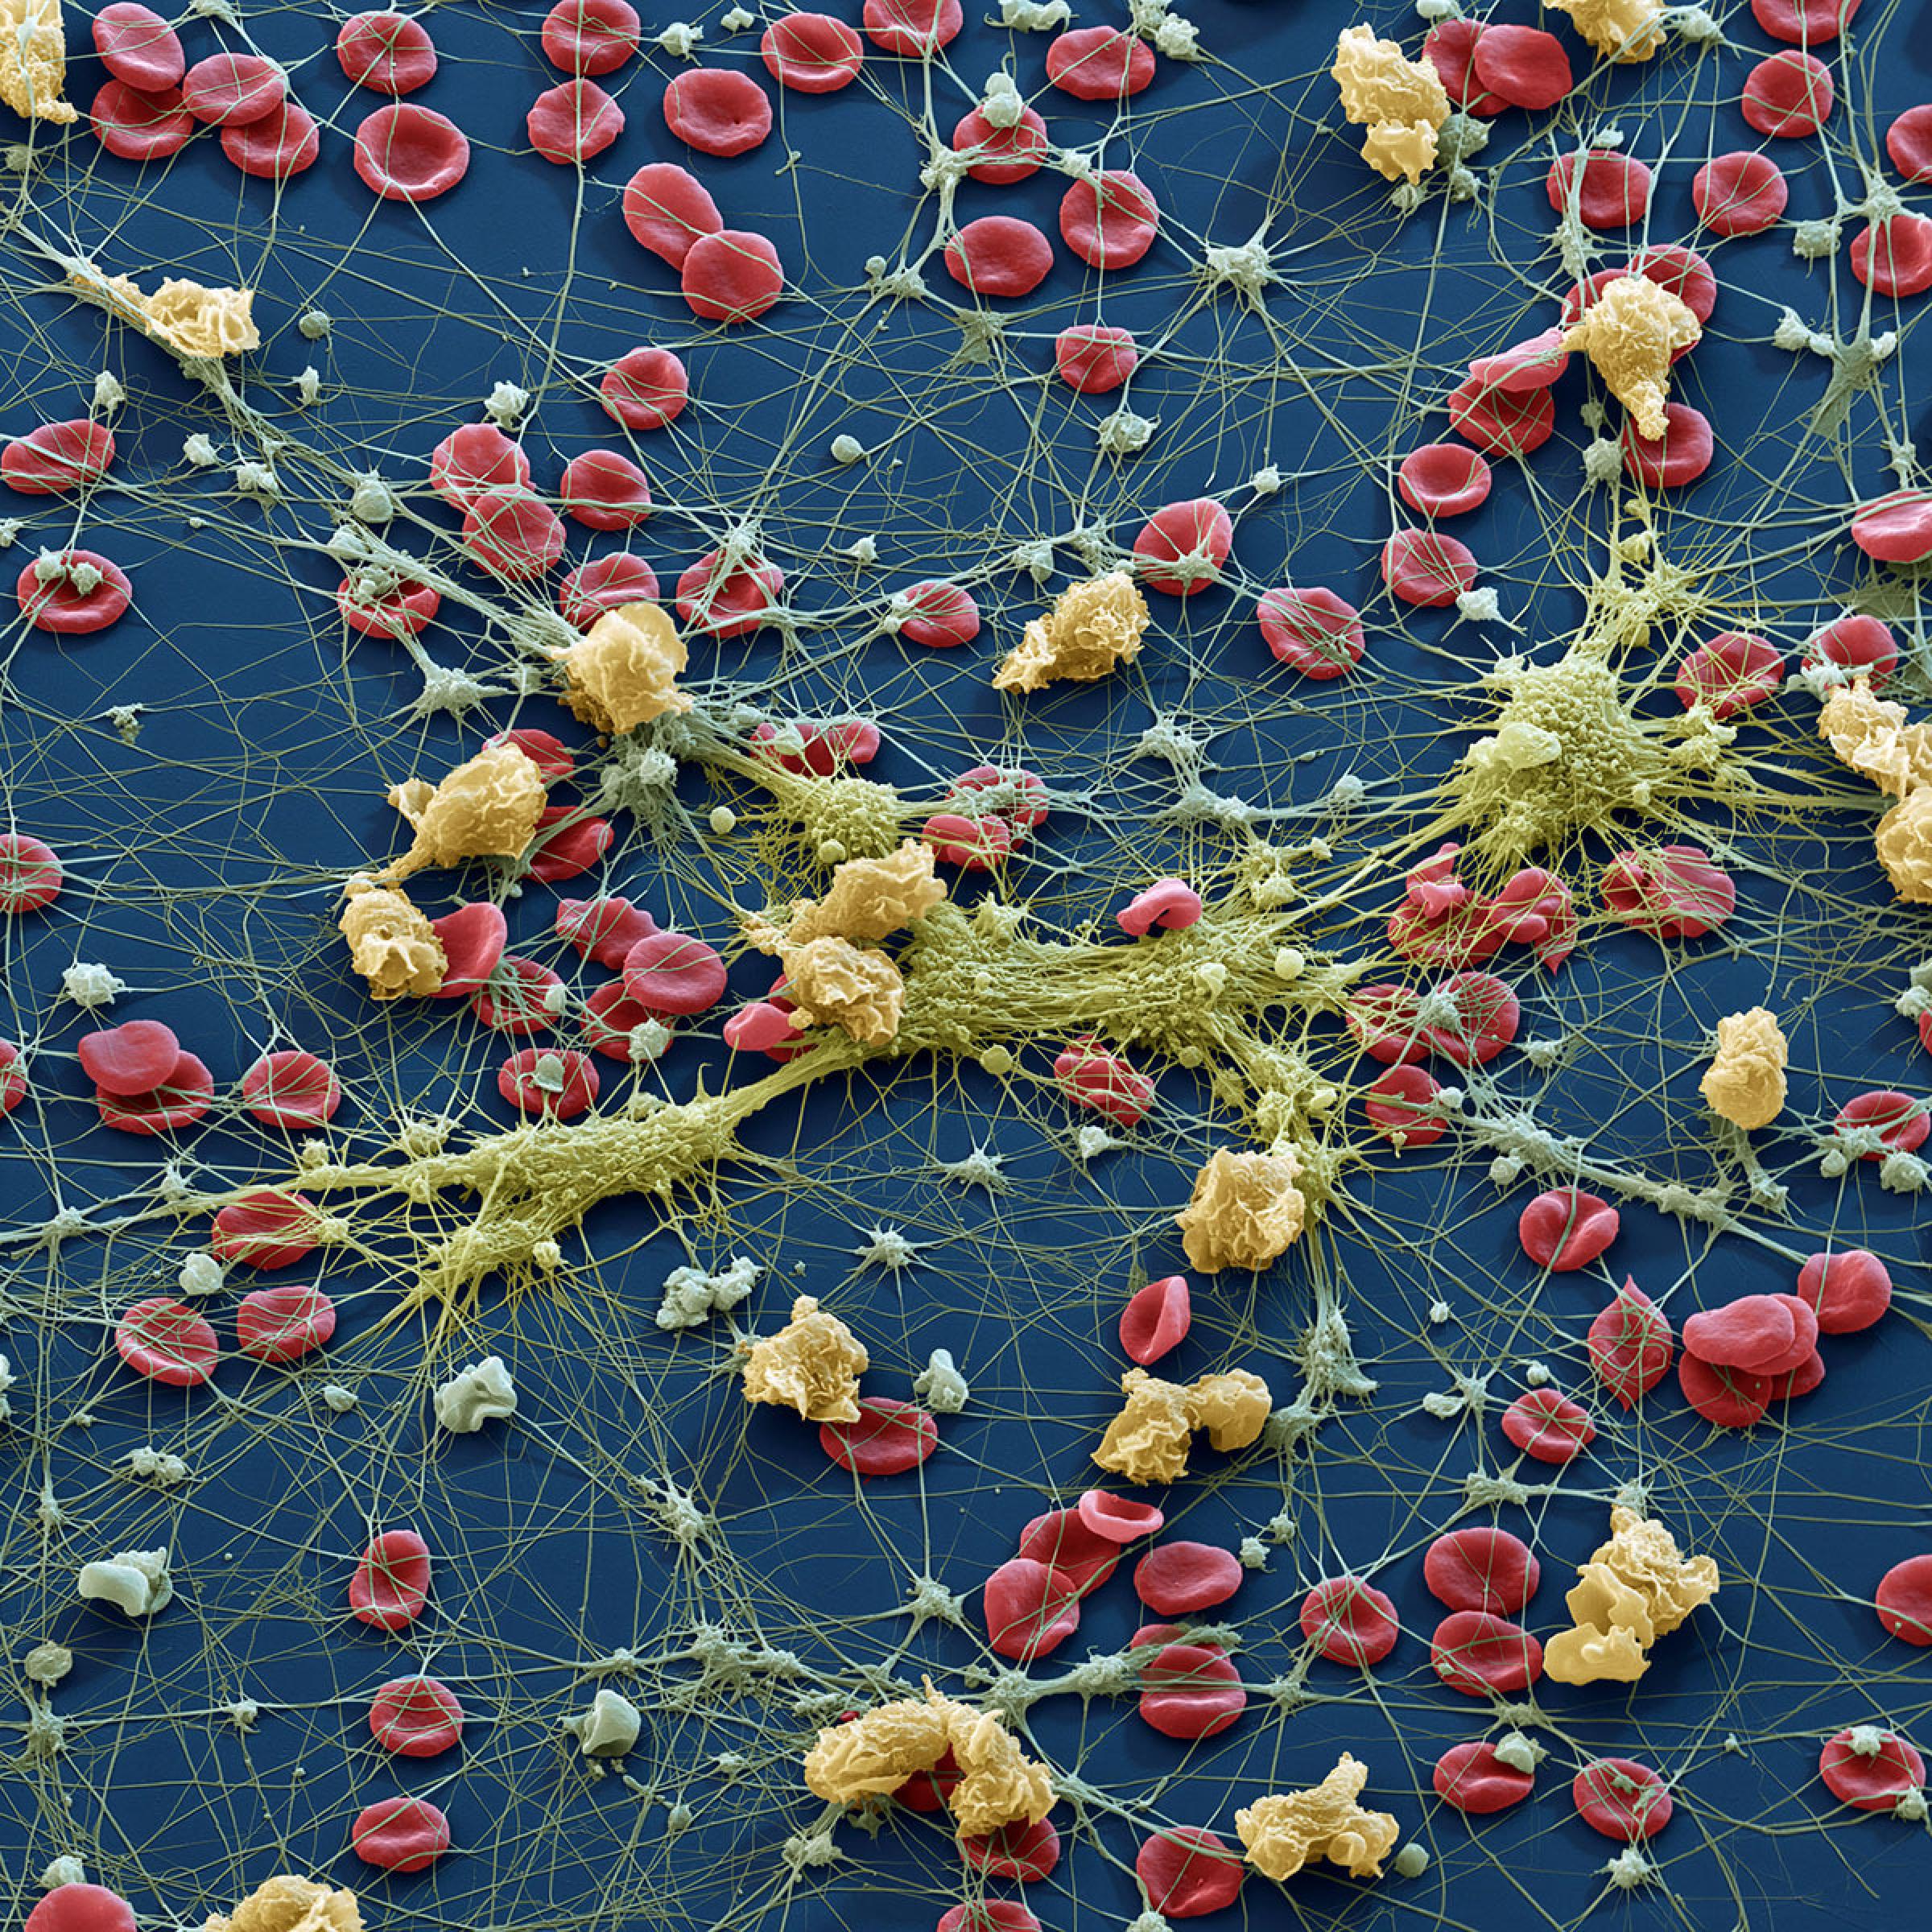 Medizin, Blut: Erythrozyten, Lymphozyten und Thrombozyten. Das Bild zeigt die wichtigsten Blutzellen: Die Erythrozyten (Rote Blutkörperchen) sorgen fur den Sauerstoff-Transport im Körper. Die Thrombozyten ( Blutplättchen, grau) werden wie die Ery's im Knochenmark gebildet und steuern durch Abgabe ihrer „Plättchenfaktoren“ die Blutgerinnung. Leukozyten (Weisse Blutkörperchen, beige+ gelbgrün)  sind im Körper für die Immunabwehr verantwortlich. Auf dem Bild haben einige weisse Blutzellen (Monozyten) Pseudopodien ausgebildet, andere (Granulozyten, gelblich gefärbt) haben Ihre kugelige Form erhalten. Raster-Elektronenmikroskop, Vergrößerung 960x